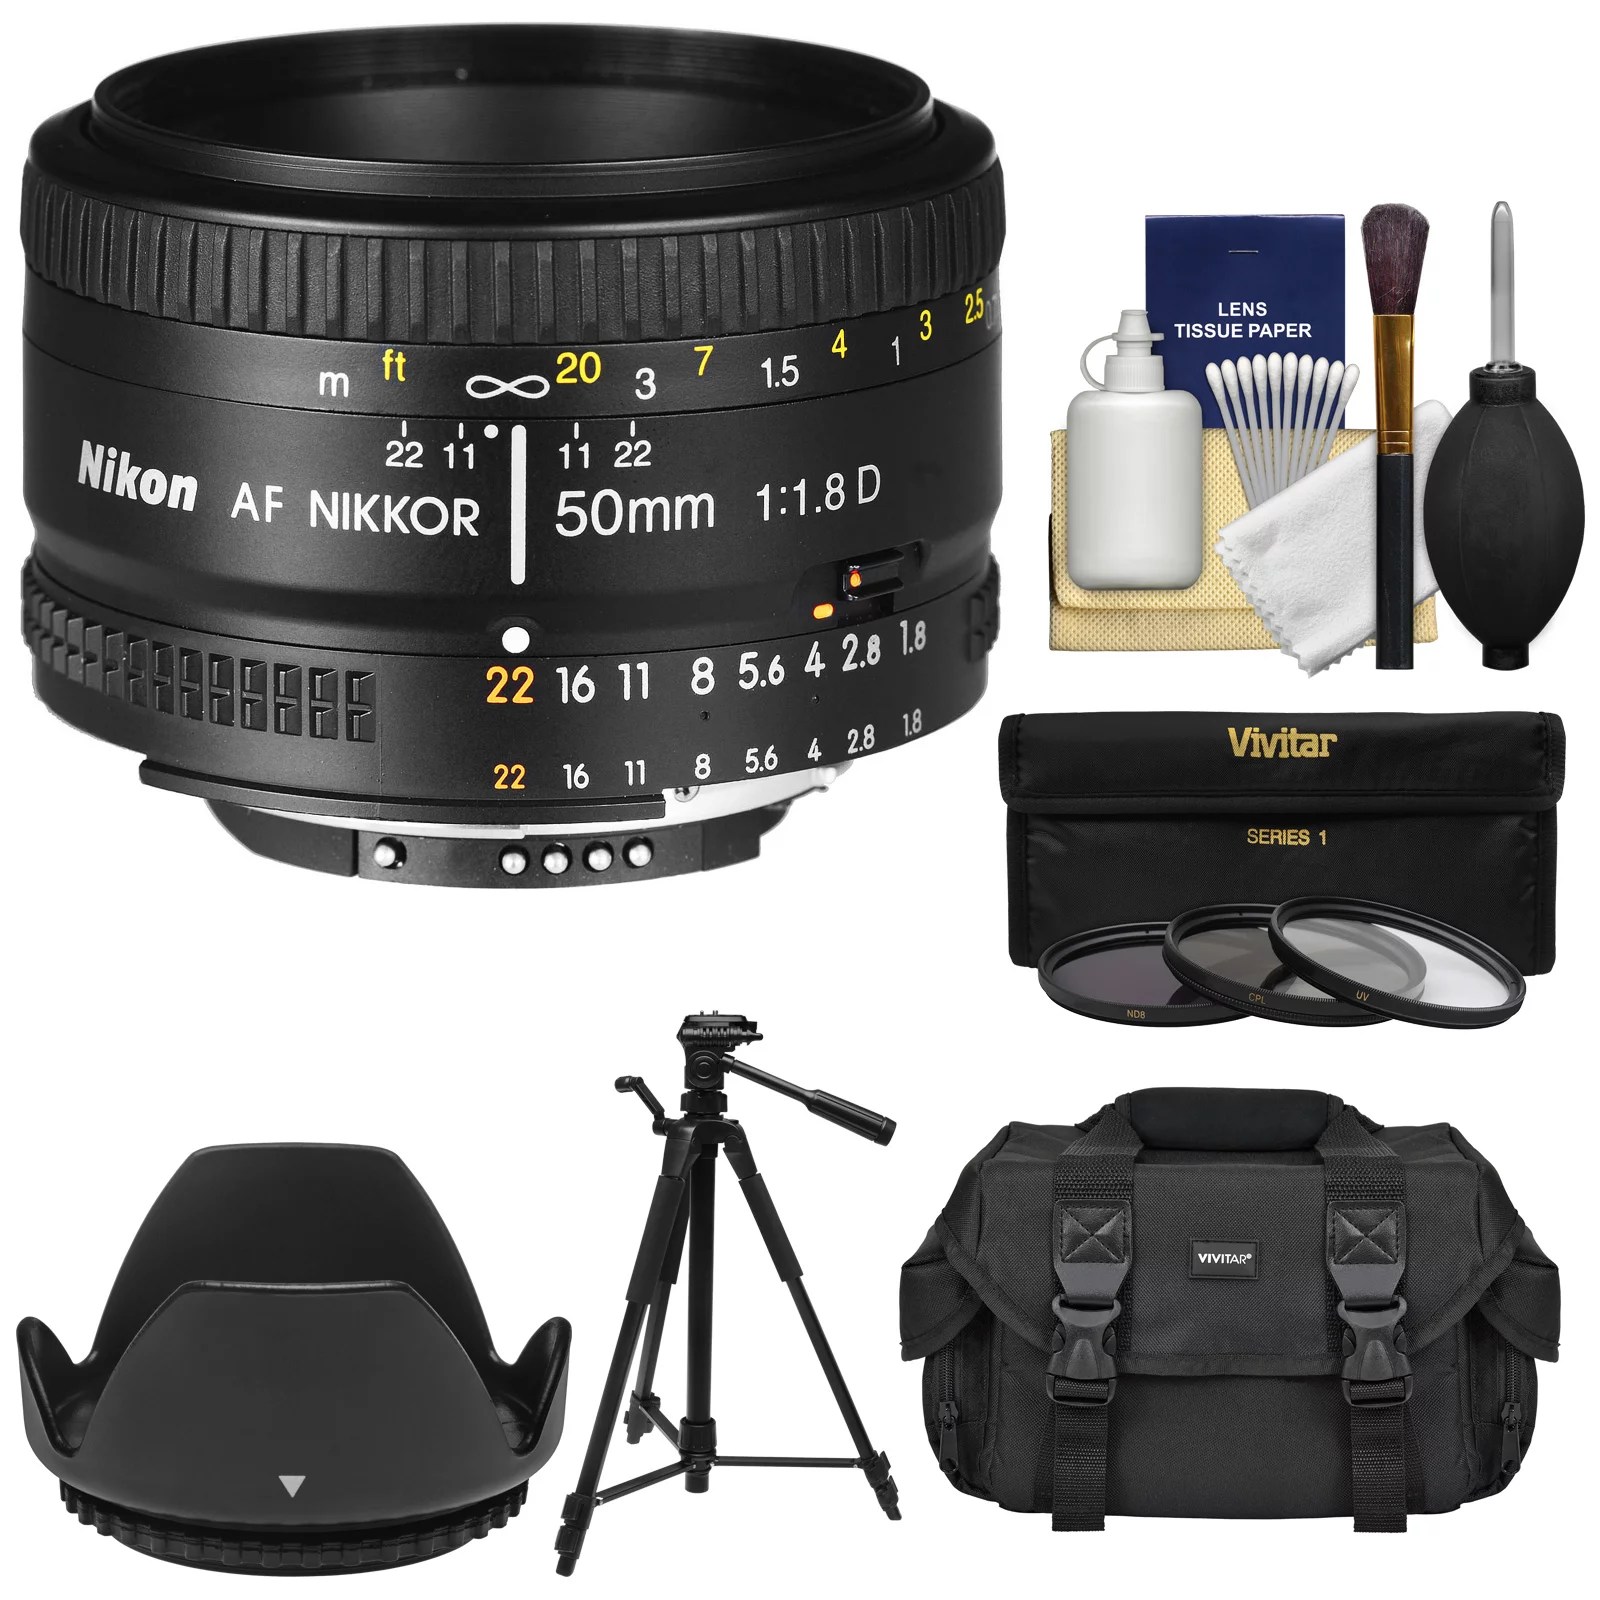 Nikon 50mm f/1.8D AF Nikkor Lens with 3 UV/CPL/ND8 Filters